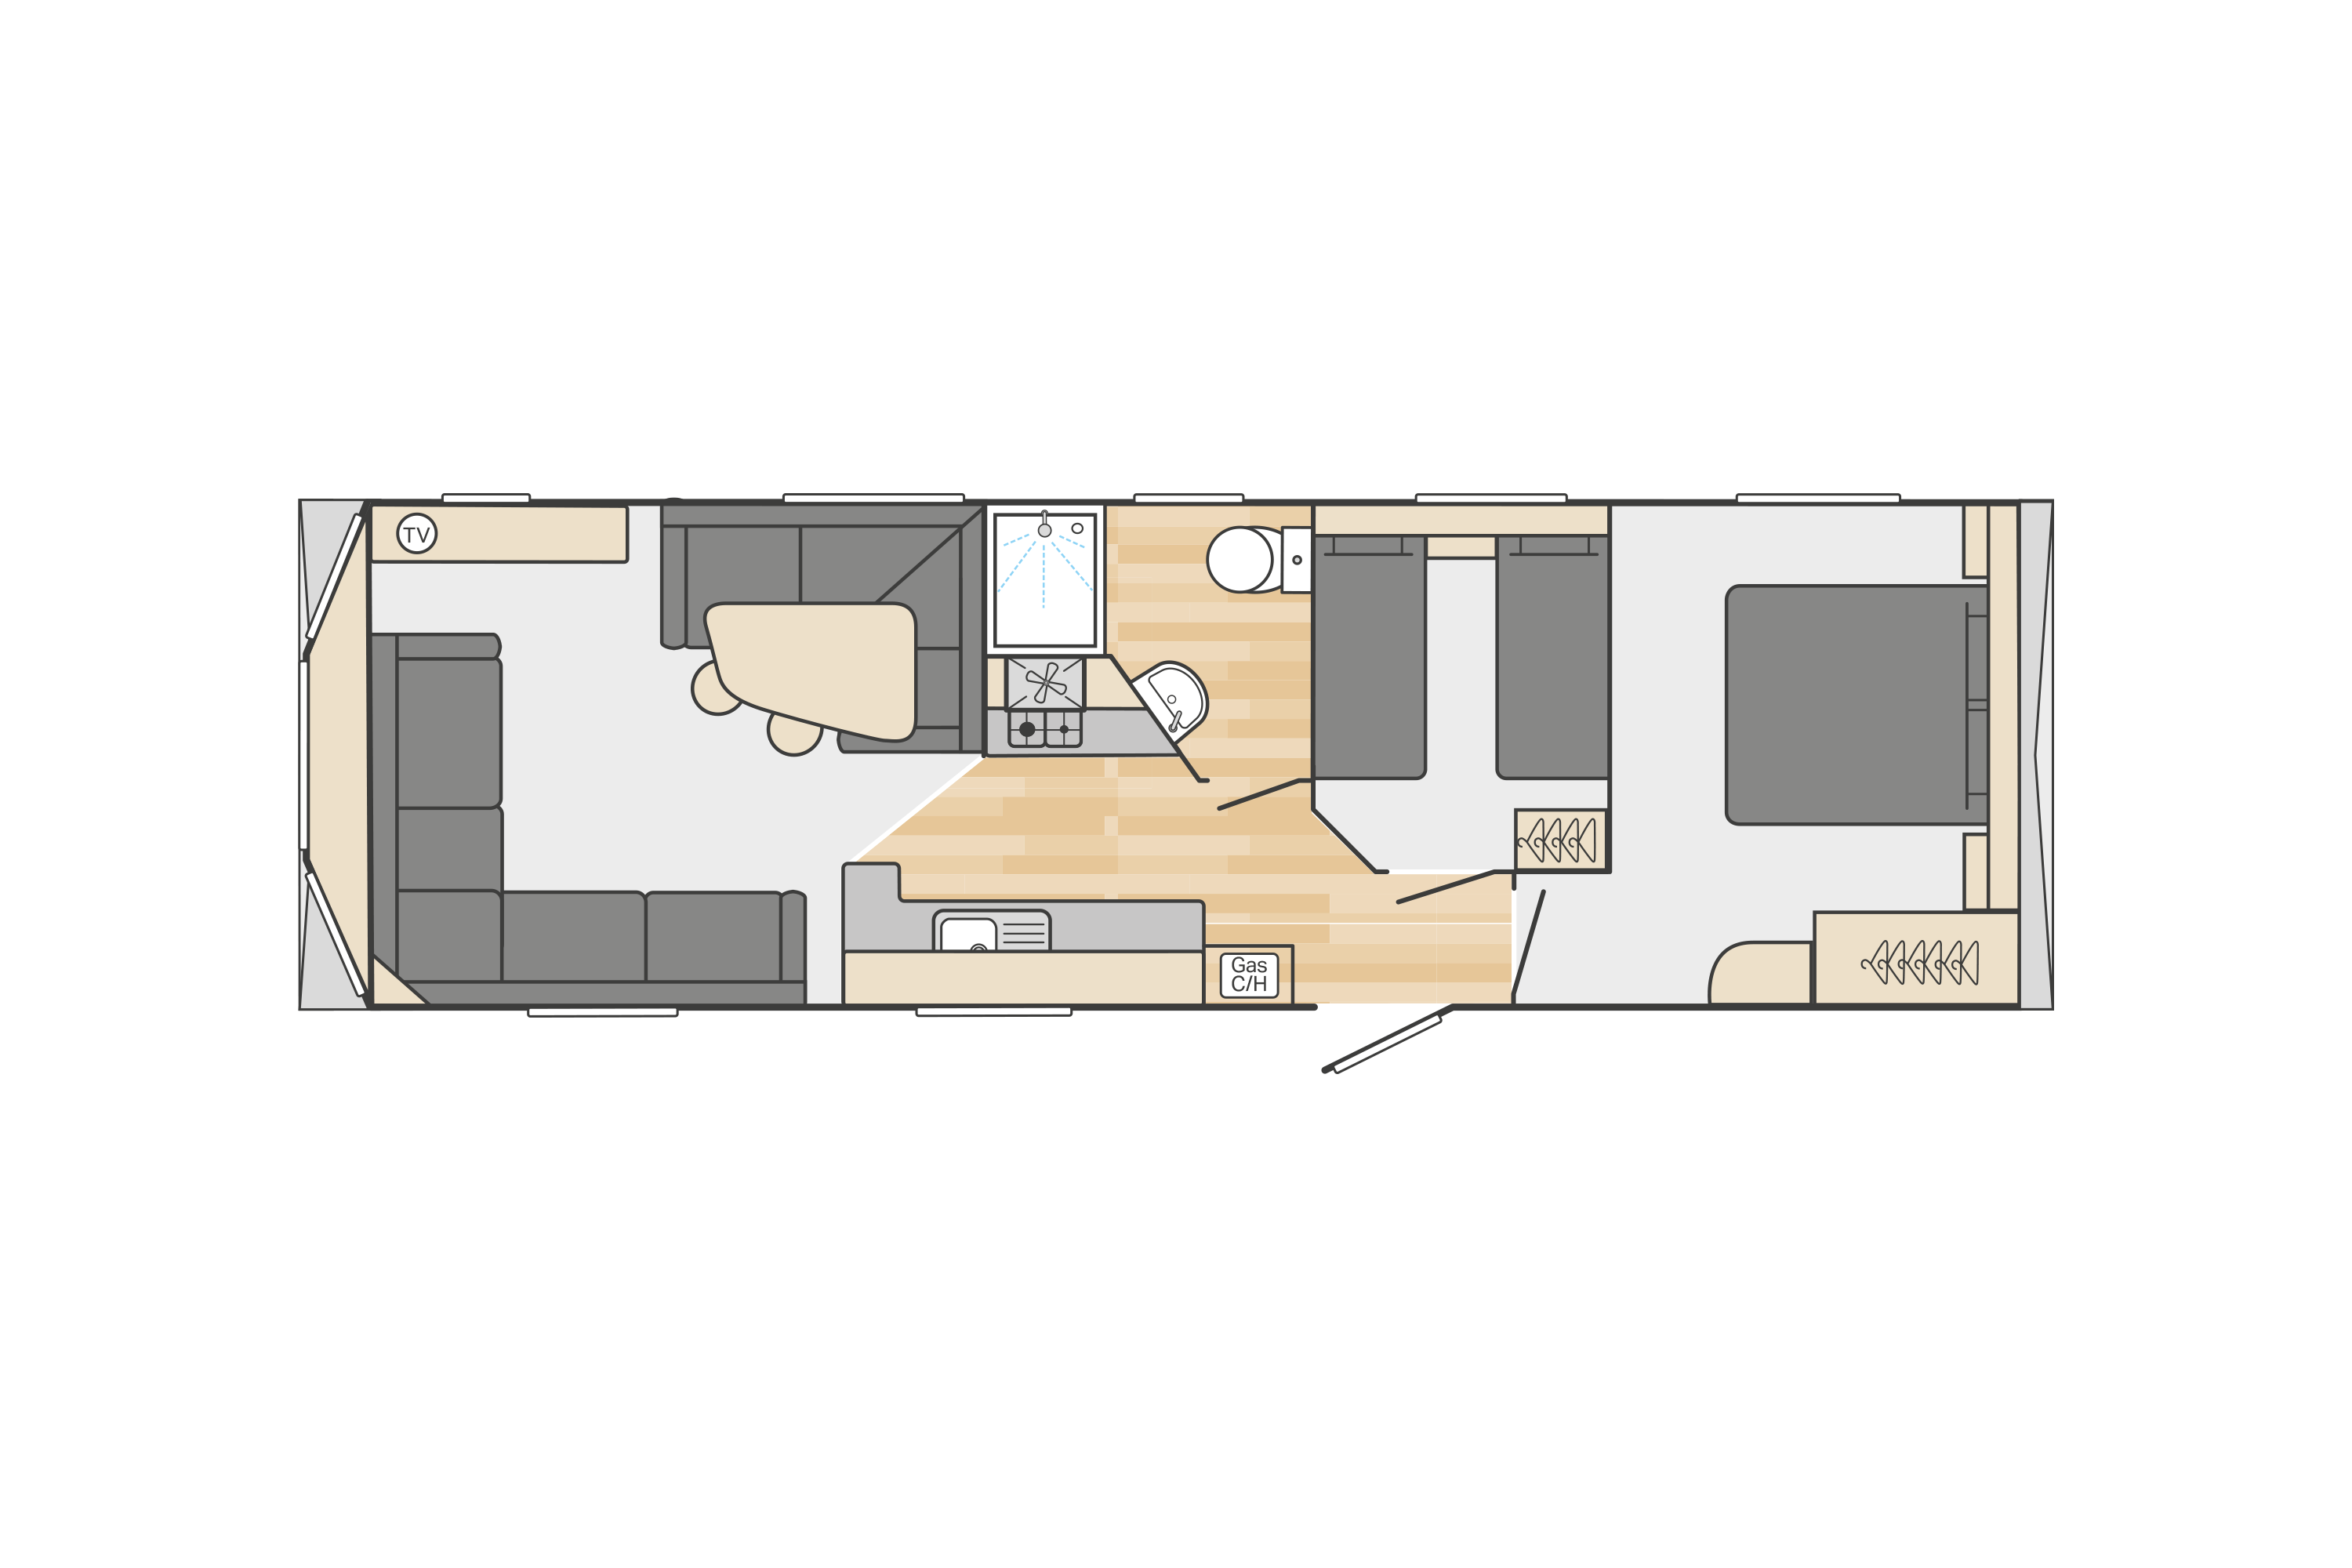 Loire 32' x 10' 2 Bedroom floorplan